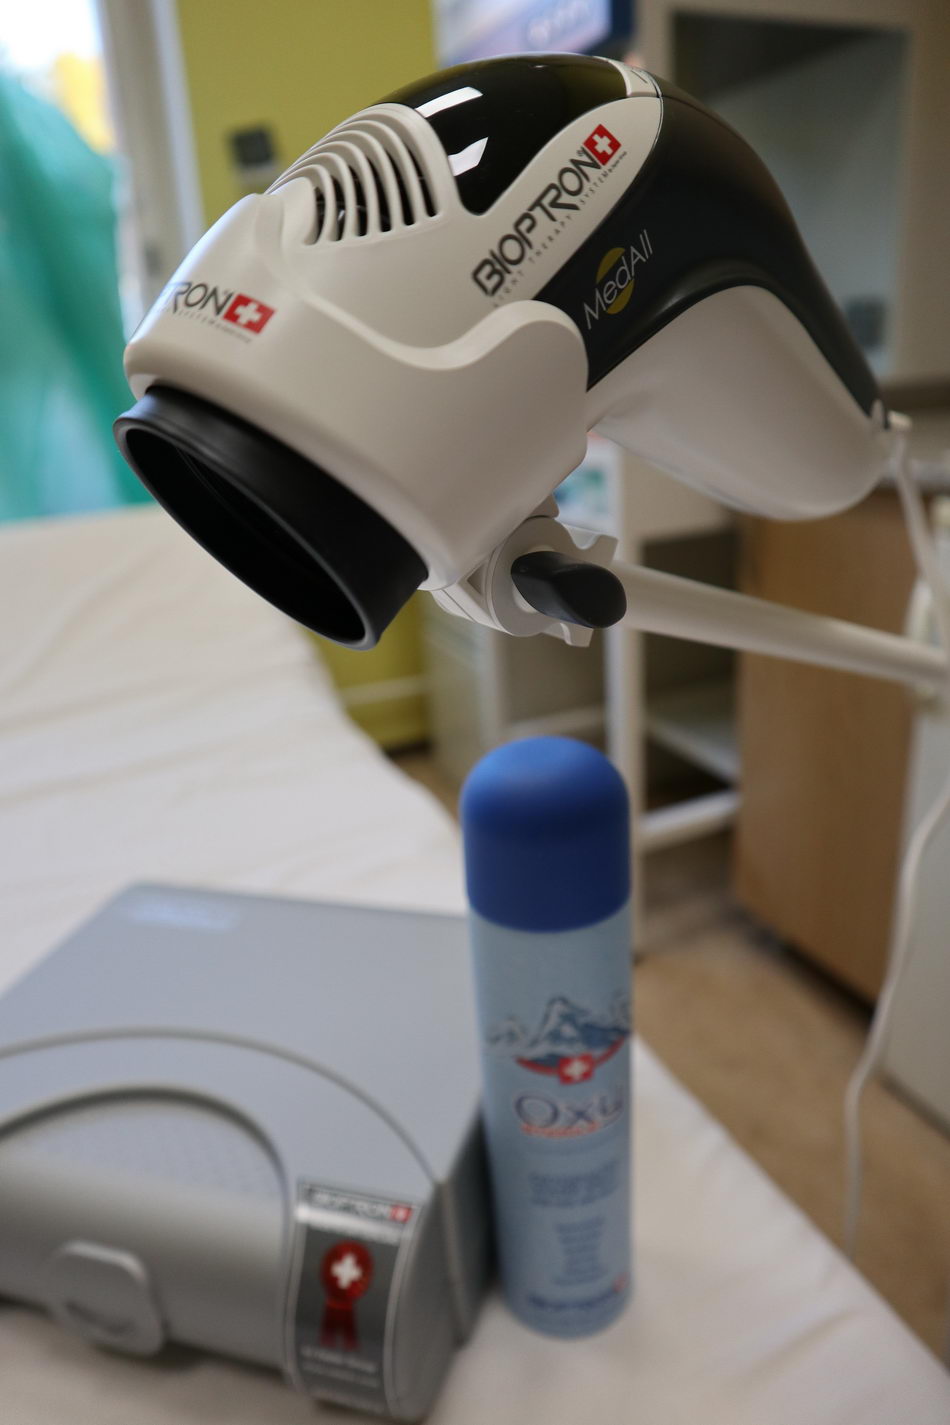 2004 fnsp zilinaz vlanajsieho vytazku zakupila zilinska onkologia bioptronovu lampu na liecbu svetlom a fototerapiu jpg